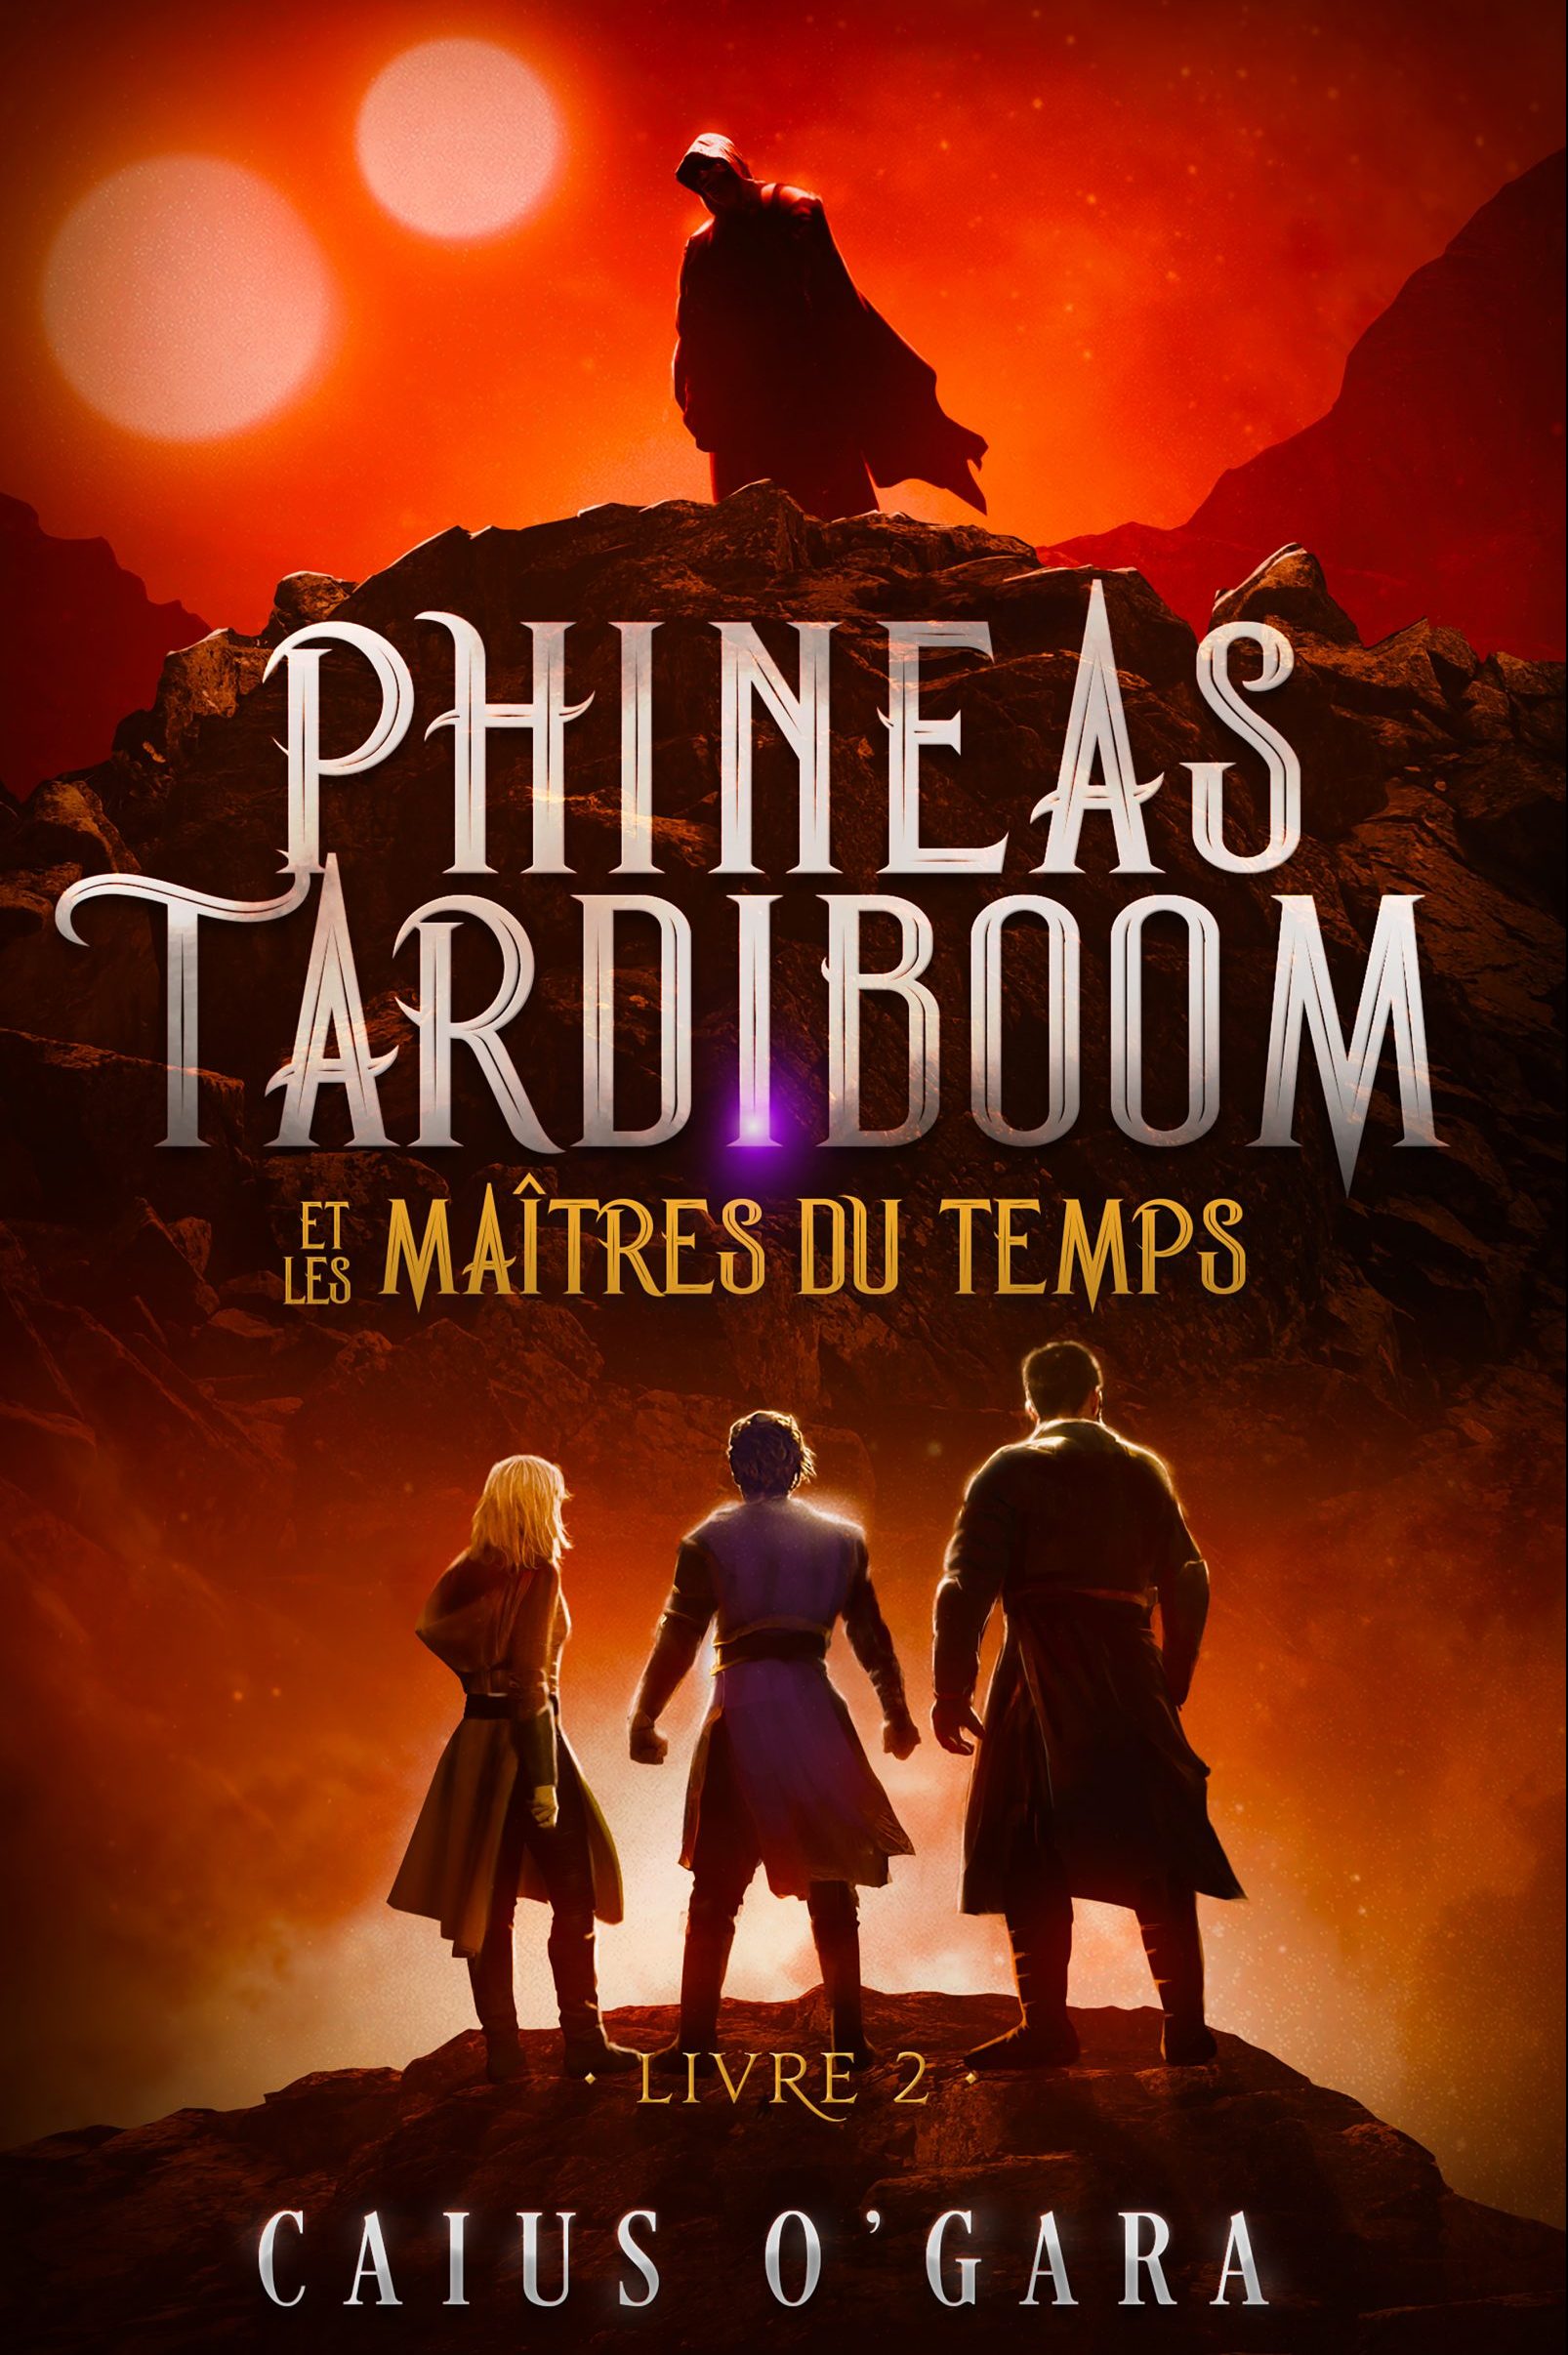 Phineas Tardiboom et les maîtres du temps (Livre 2)